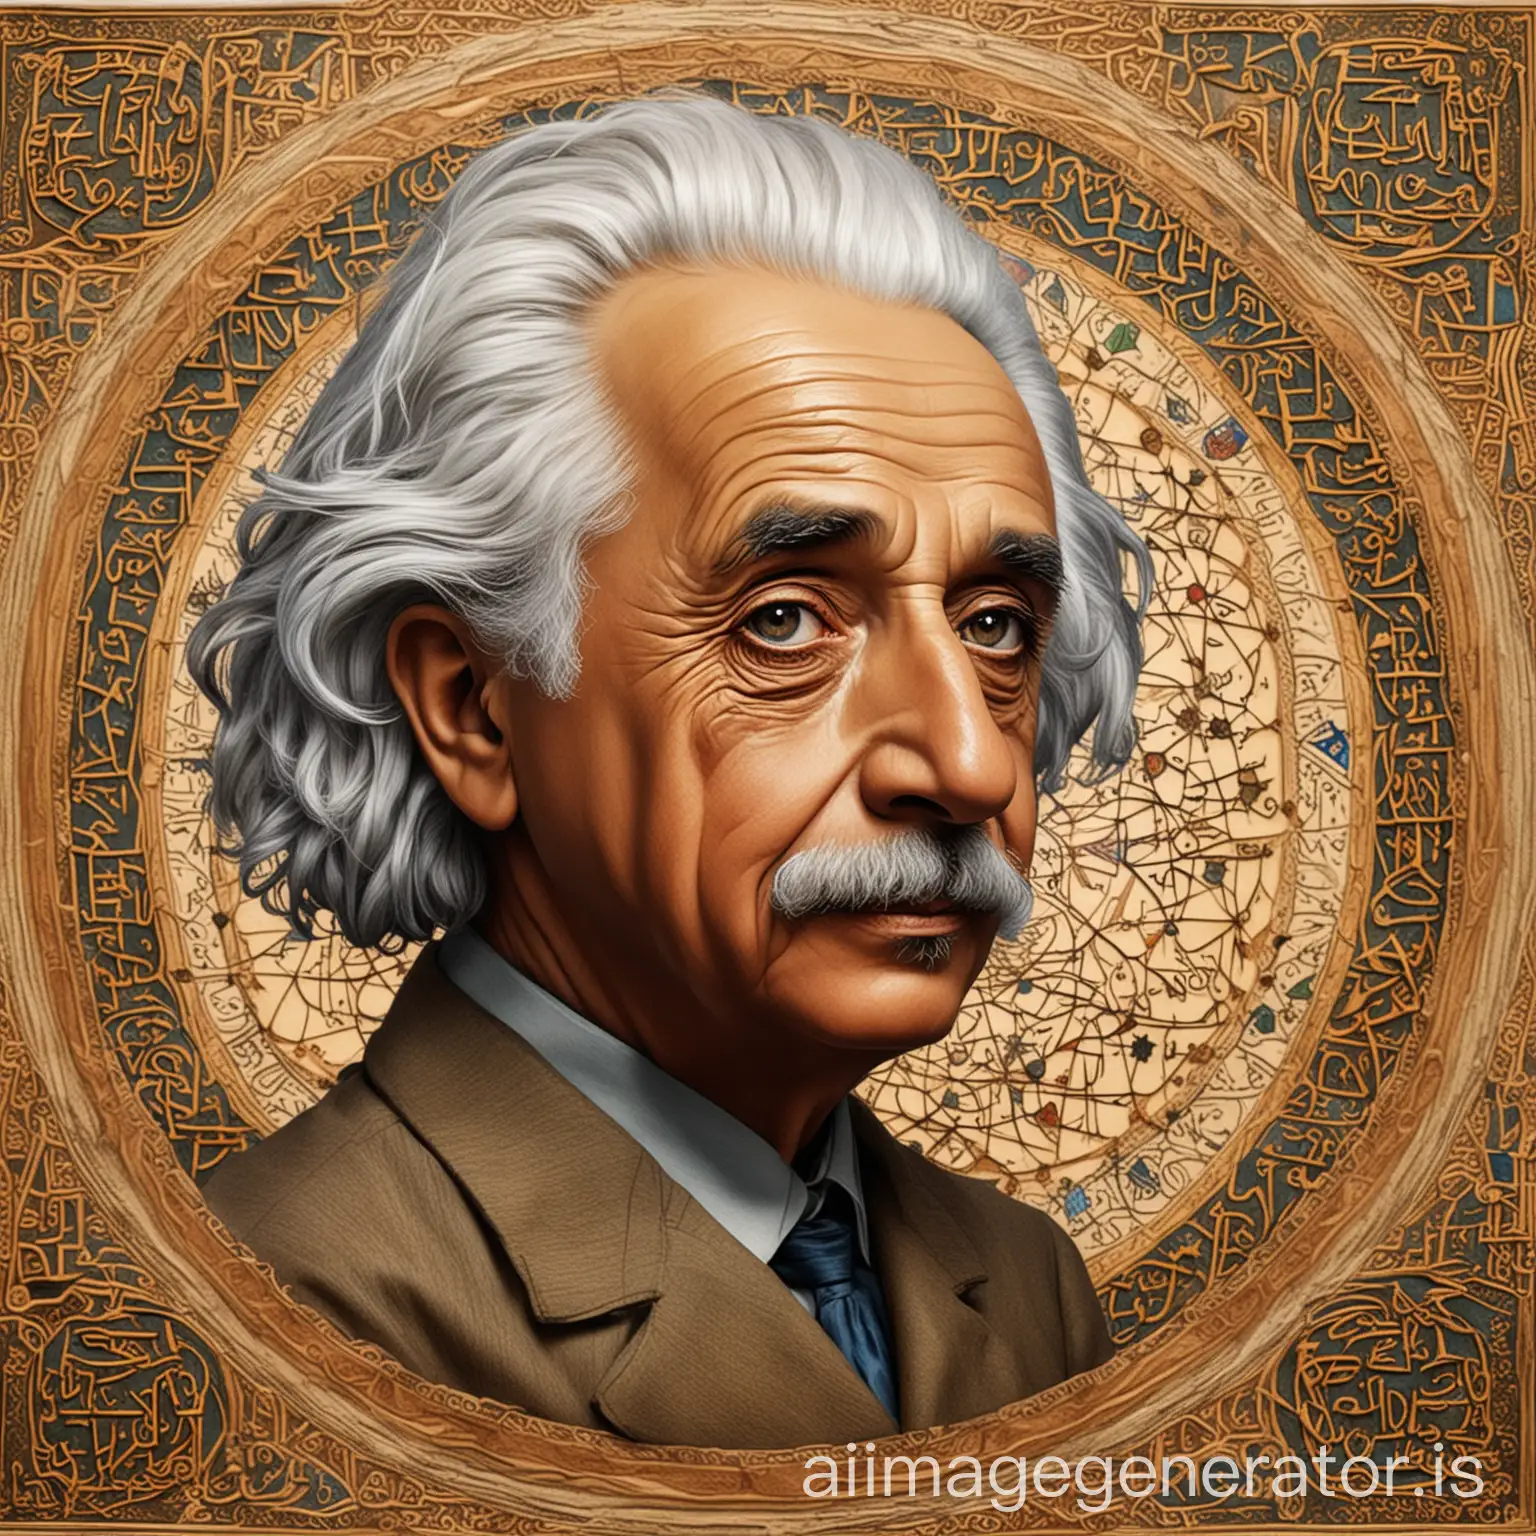 Albert-Einstein-Portrait-in-Islamic-Art-Style